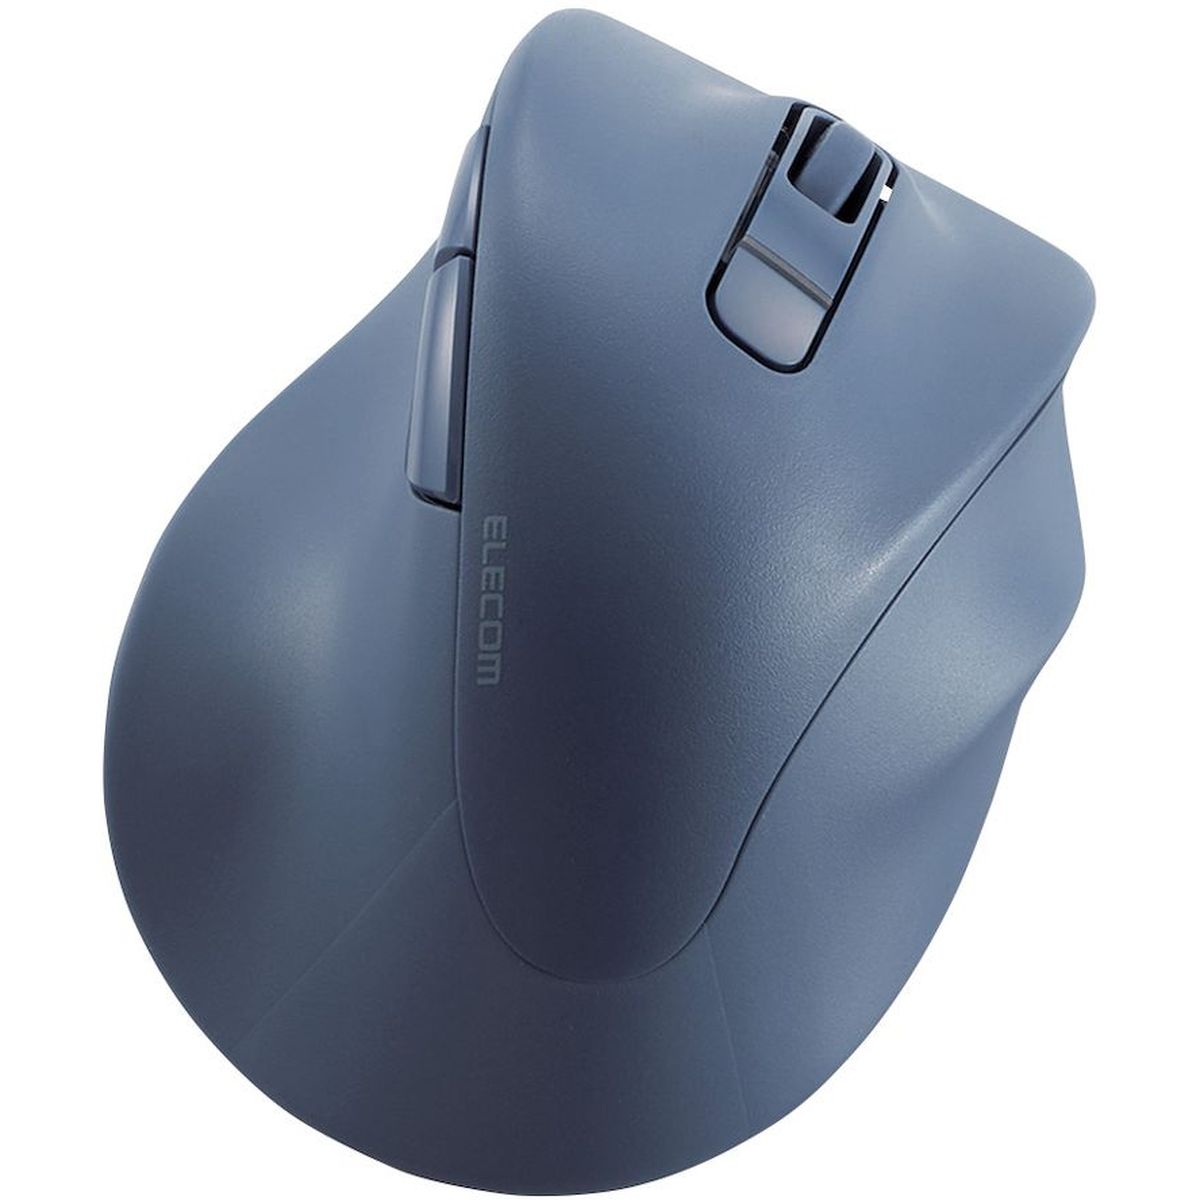 マウス/右手専用/Sサイズ/Bluetooth/5ボタン/ブルー